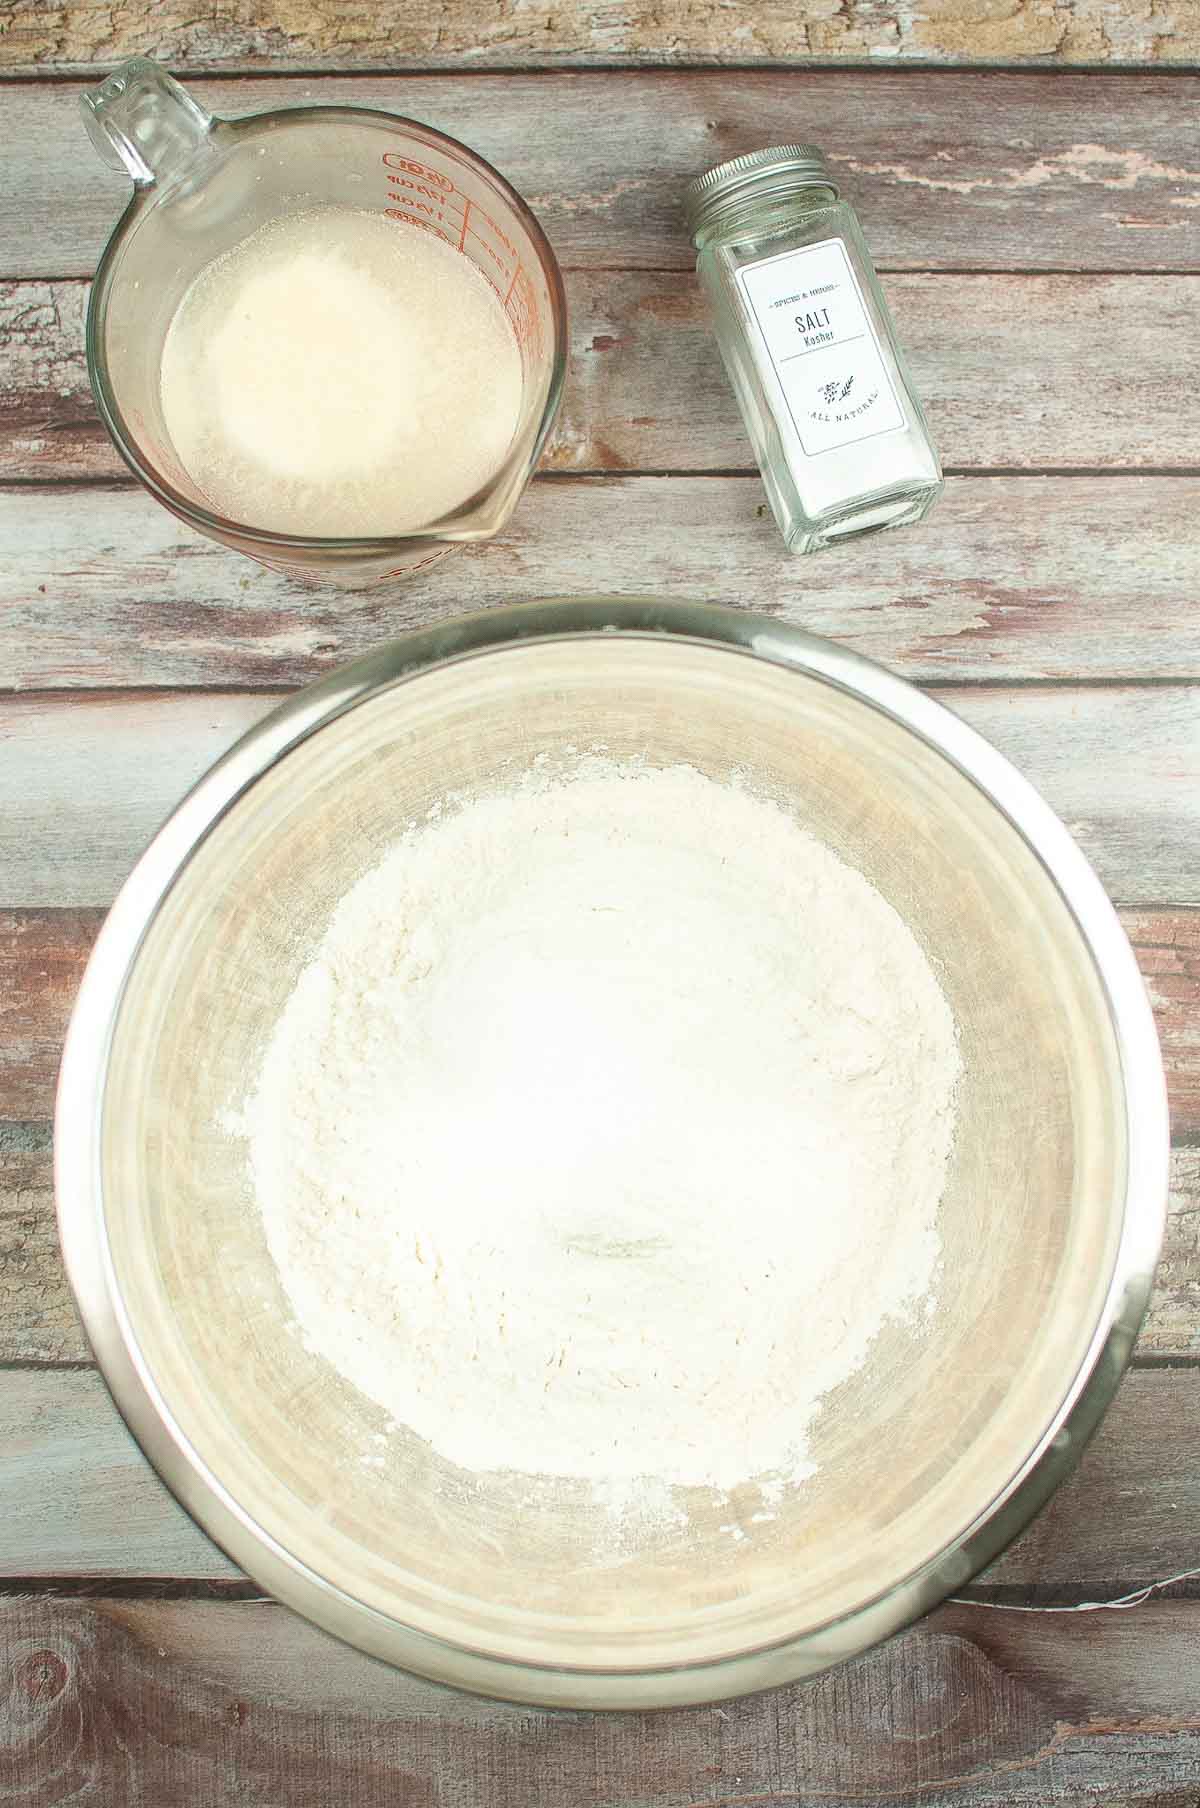 Bowl of flour with salt